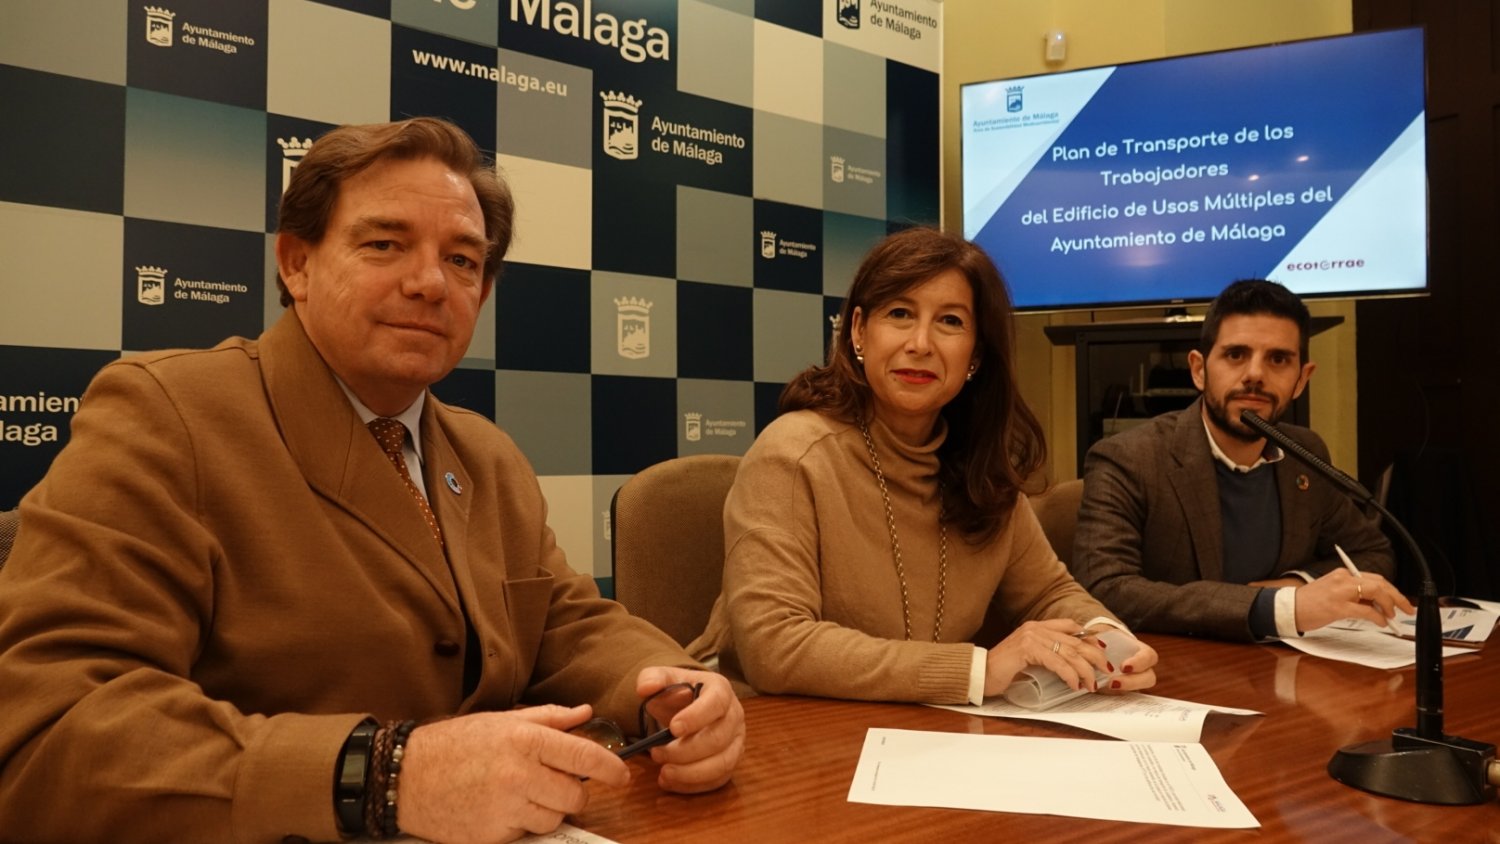 El Ayuntamiento desarrolla el I Plan de Transporte de Trabajadores del edificio de Usos Múltiples de Málaga